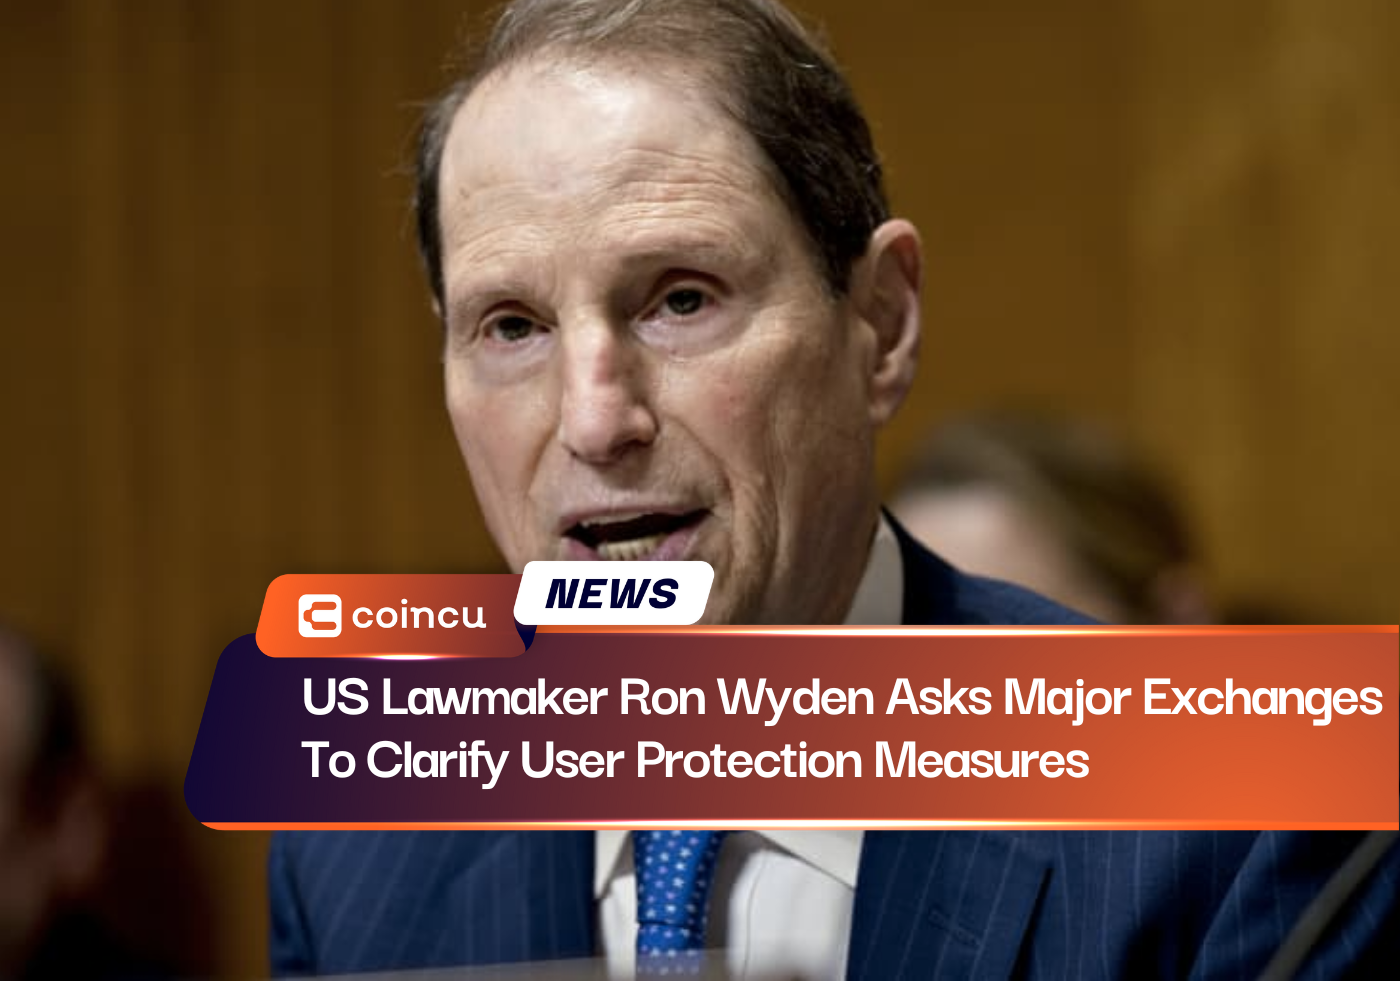 अमेरिकी सांसद रॉन विडेन ने प्रमुख एक्सचेंजों से उपयोगकर्ता सुरक्षा उपायों को स्पष्ट करने को कहा